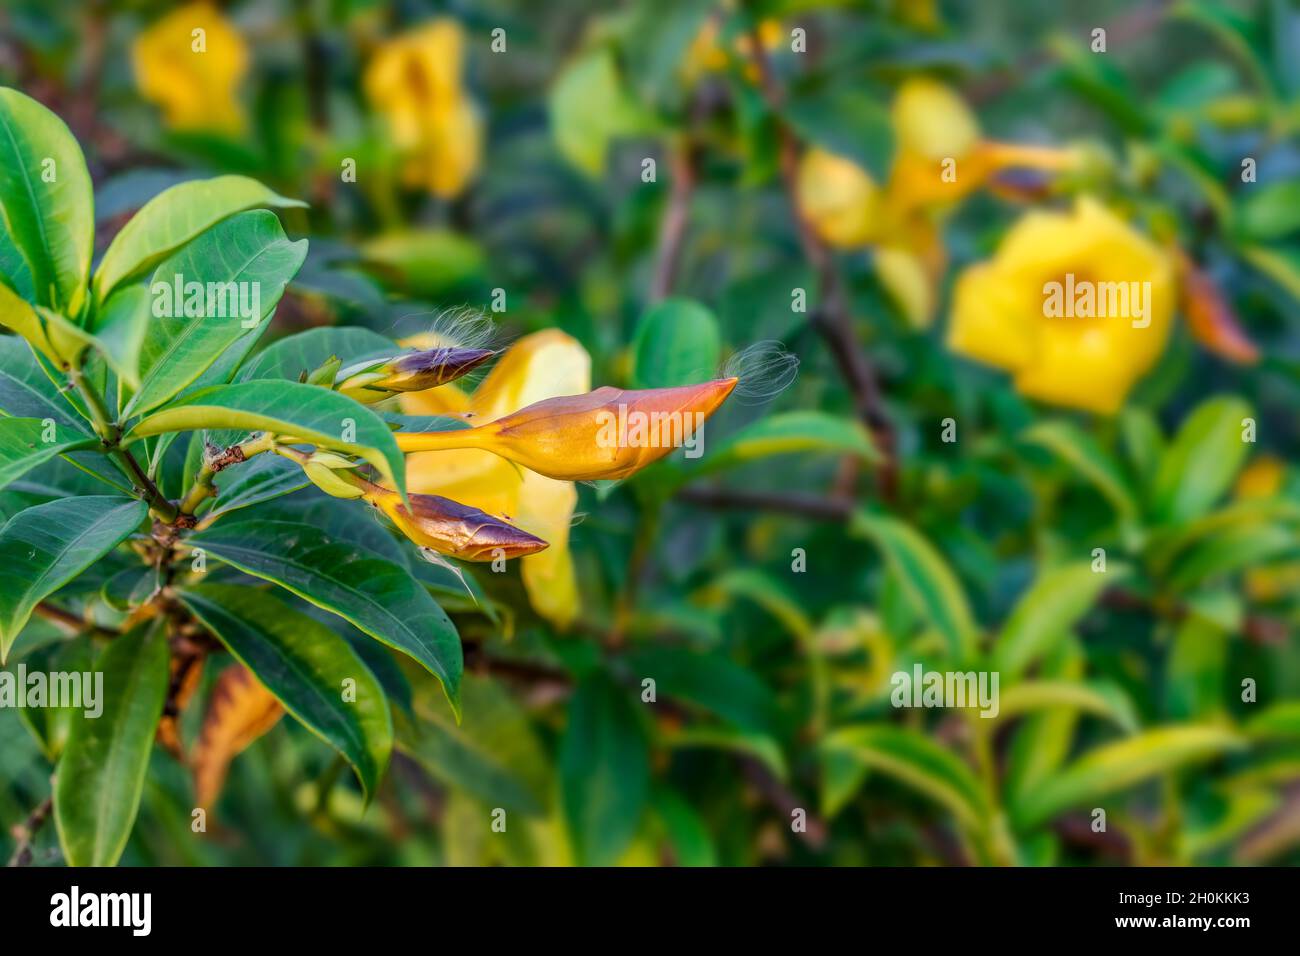 Allamanda cathartica oder gewöhnliche Trompete blühte gelbe Blume innerhalb eines Hausgartens Stockfoto